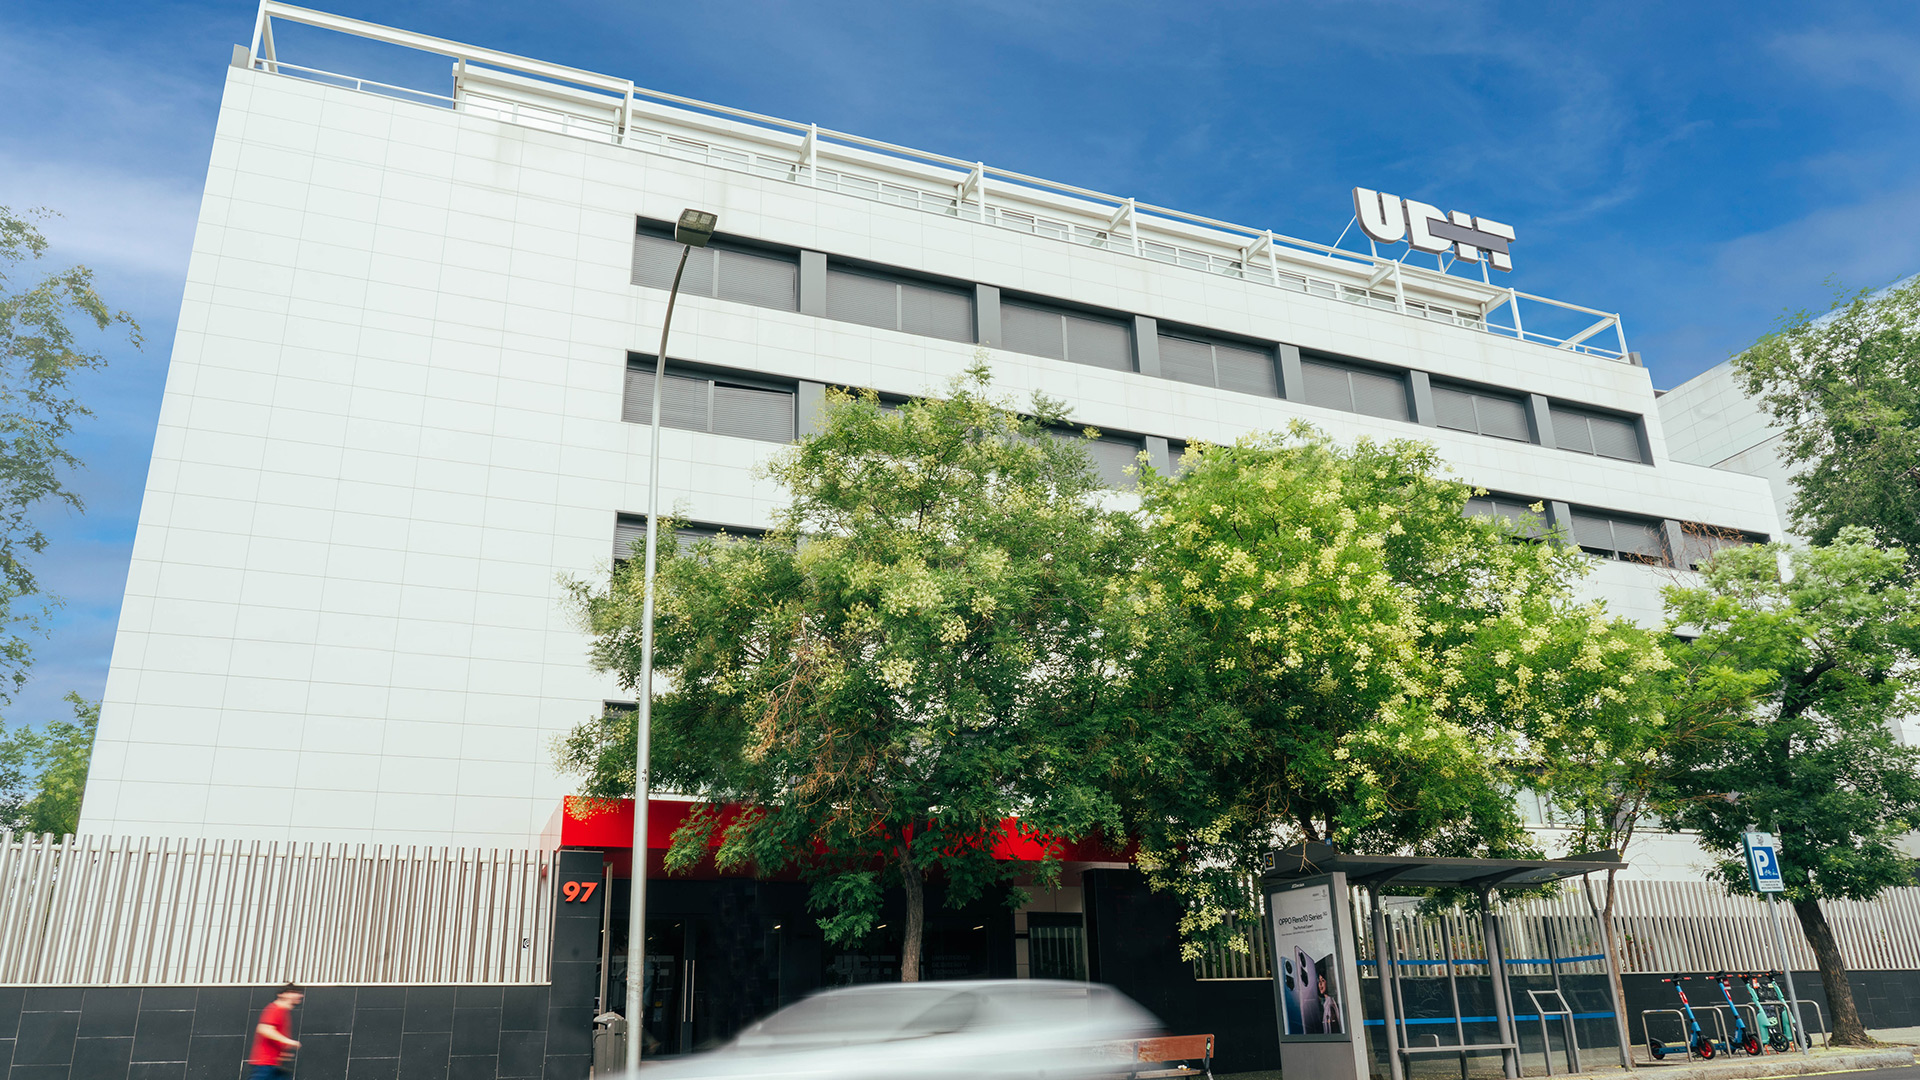 La primera Universidad especializada en Diseño y Tecnología de España: UDIT, Universidad de Diseño, Innovación y Tecnología